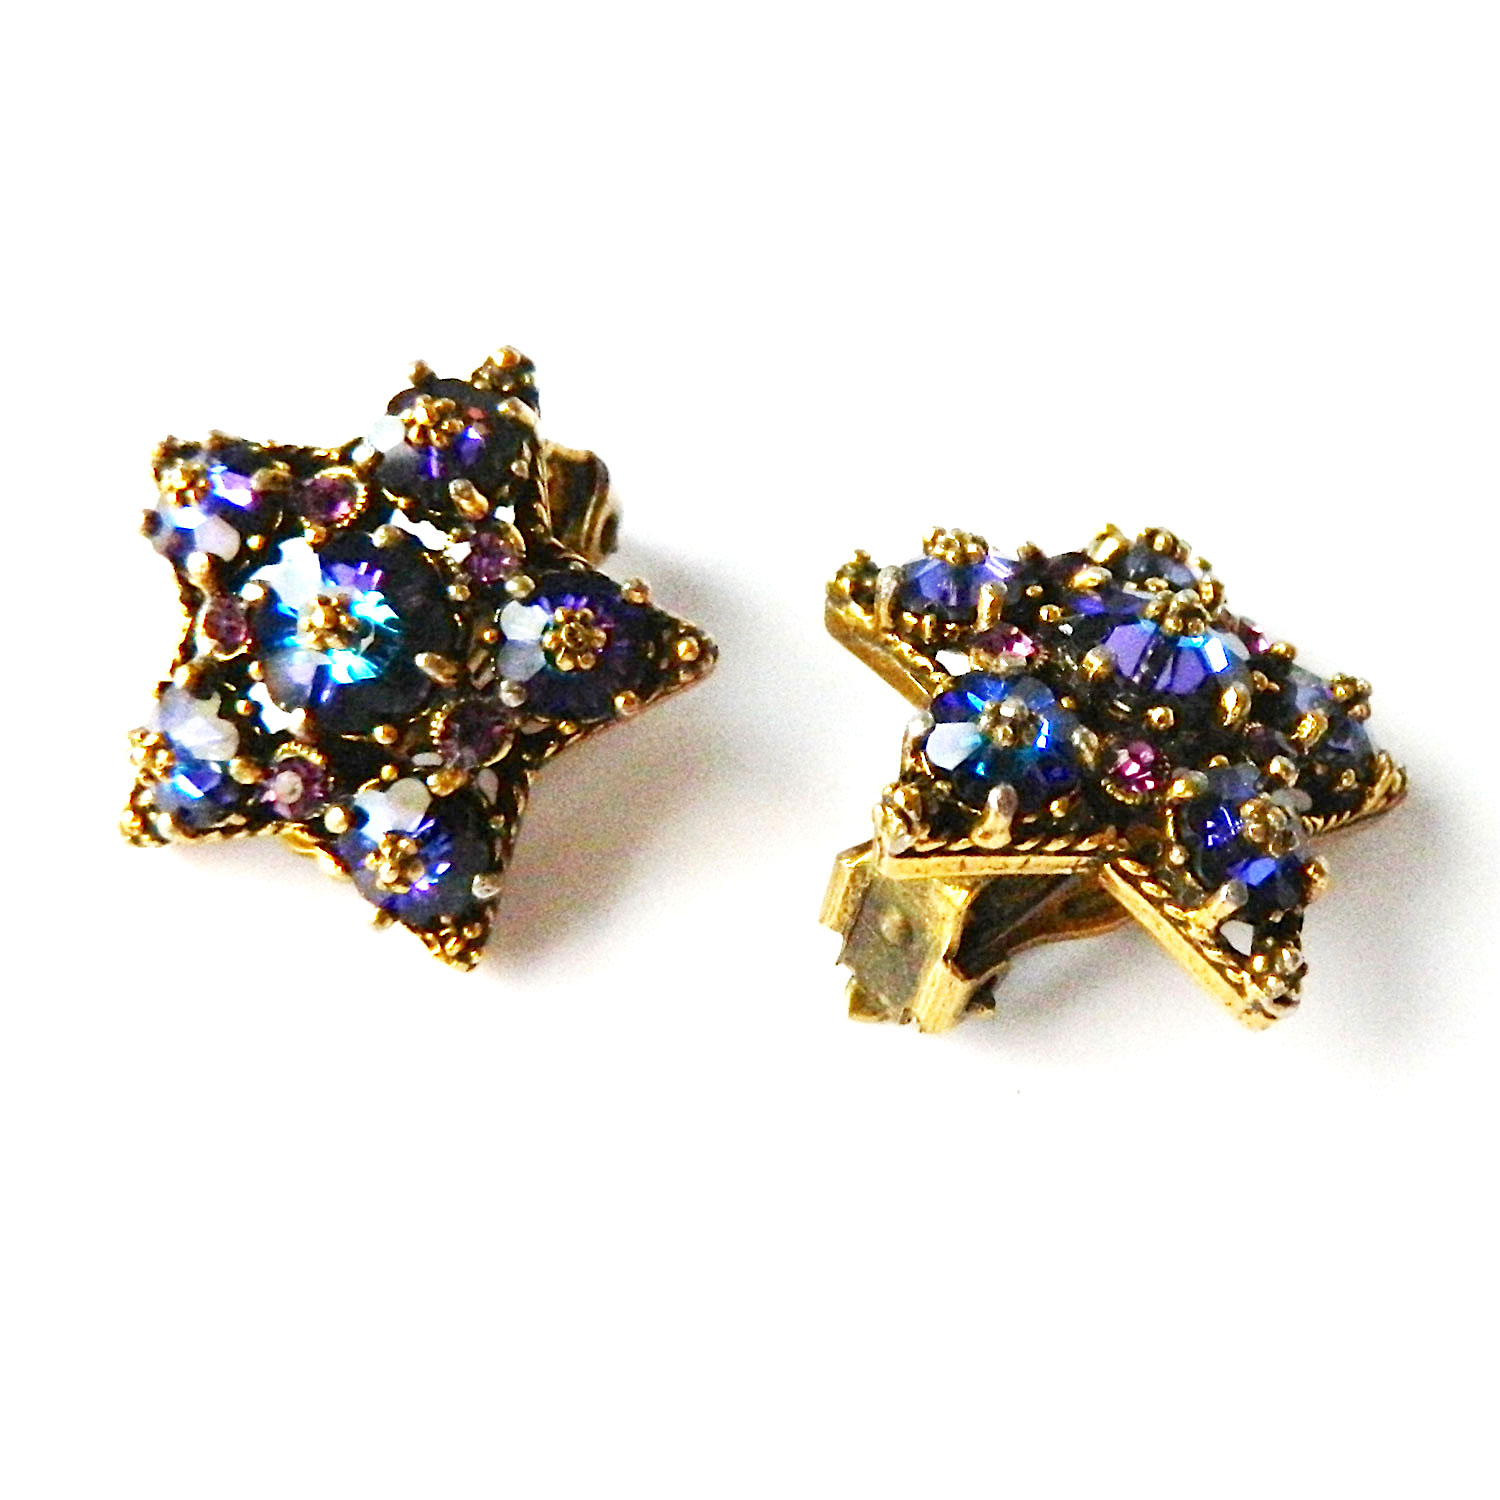 Weiss star earrings